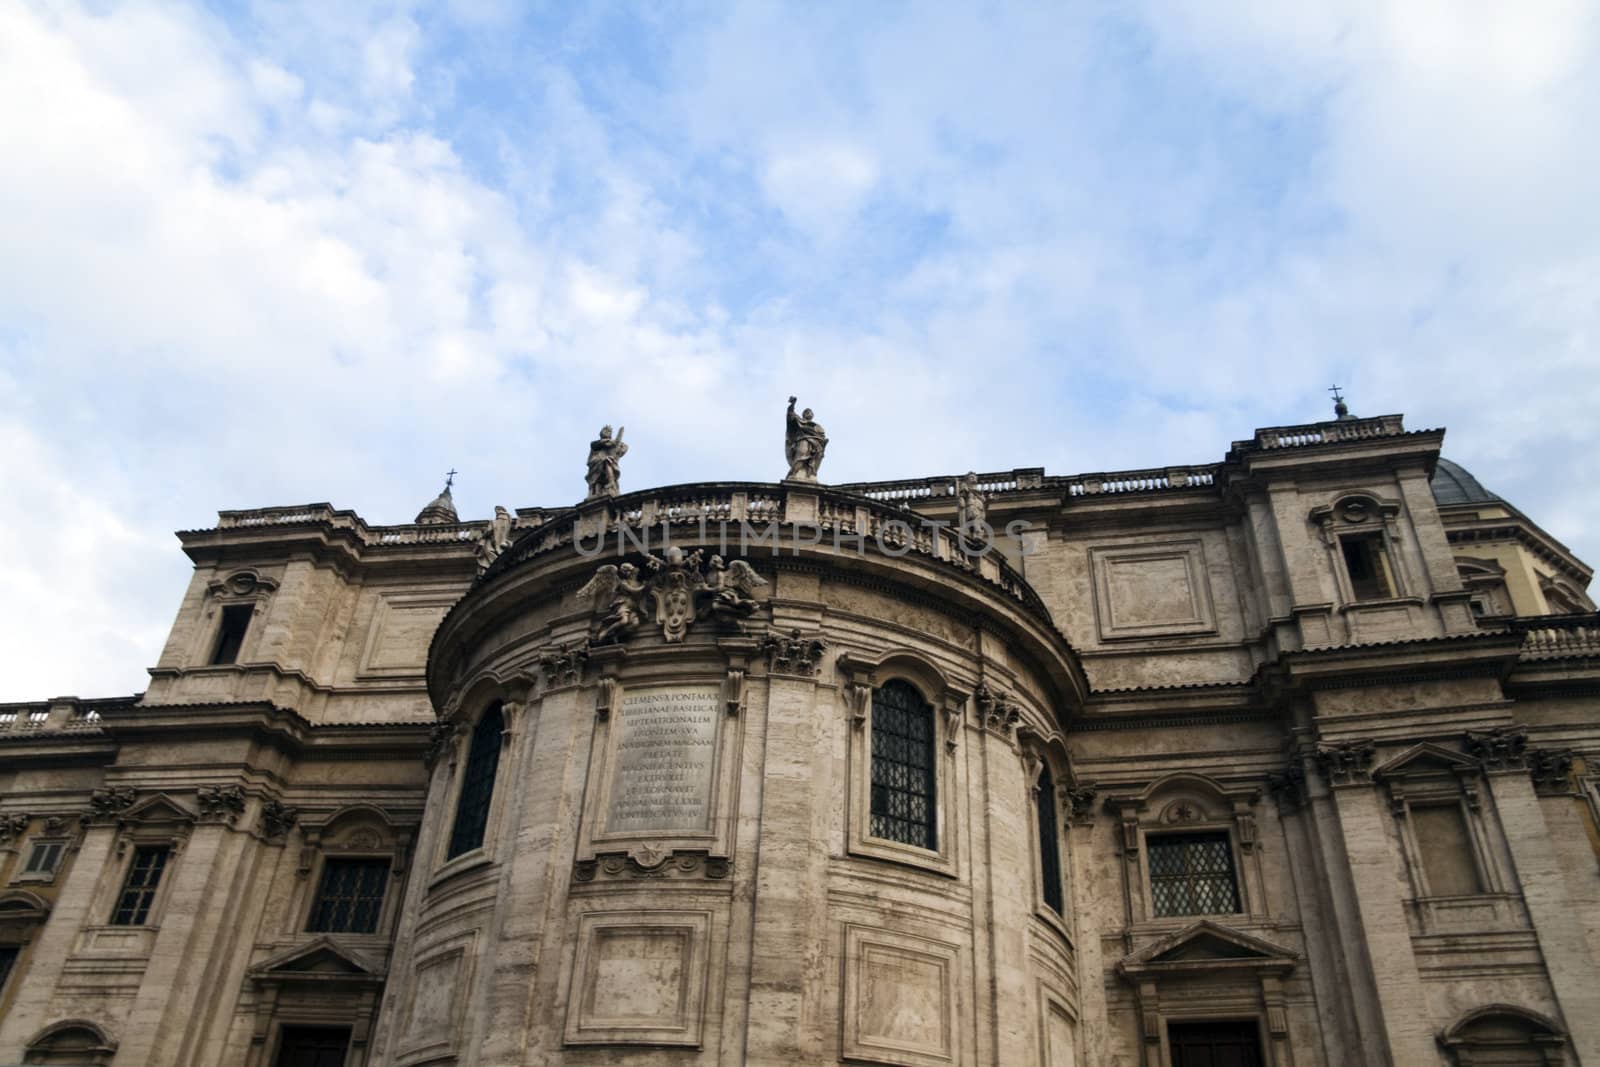 The back of Santa Maria Maggiore in Rome, Italy